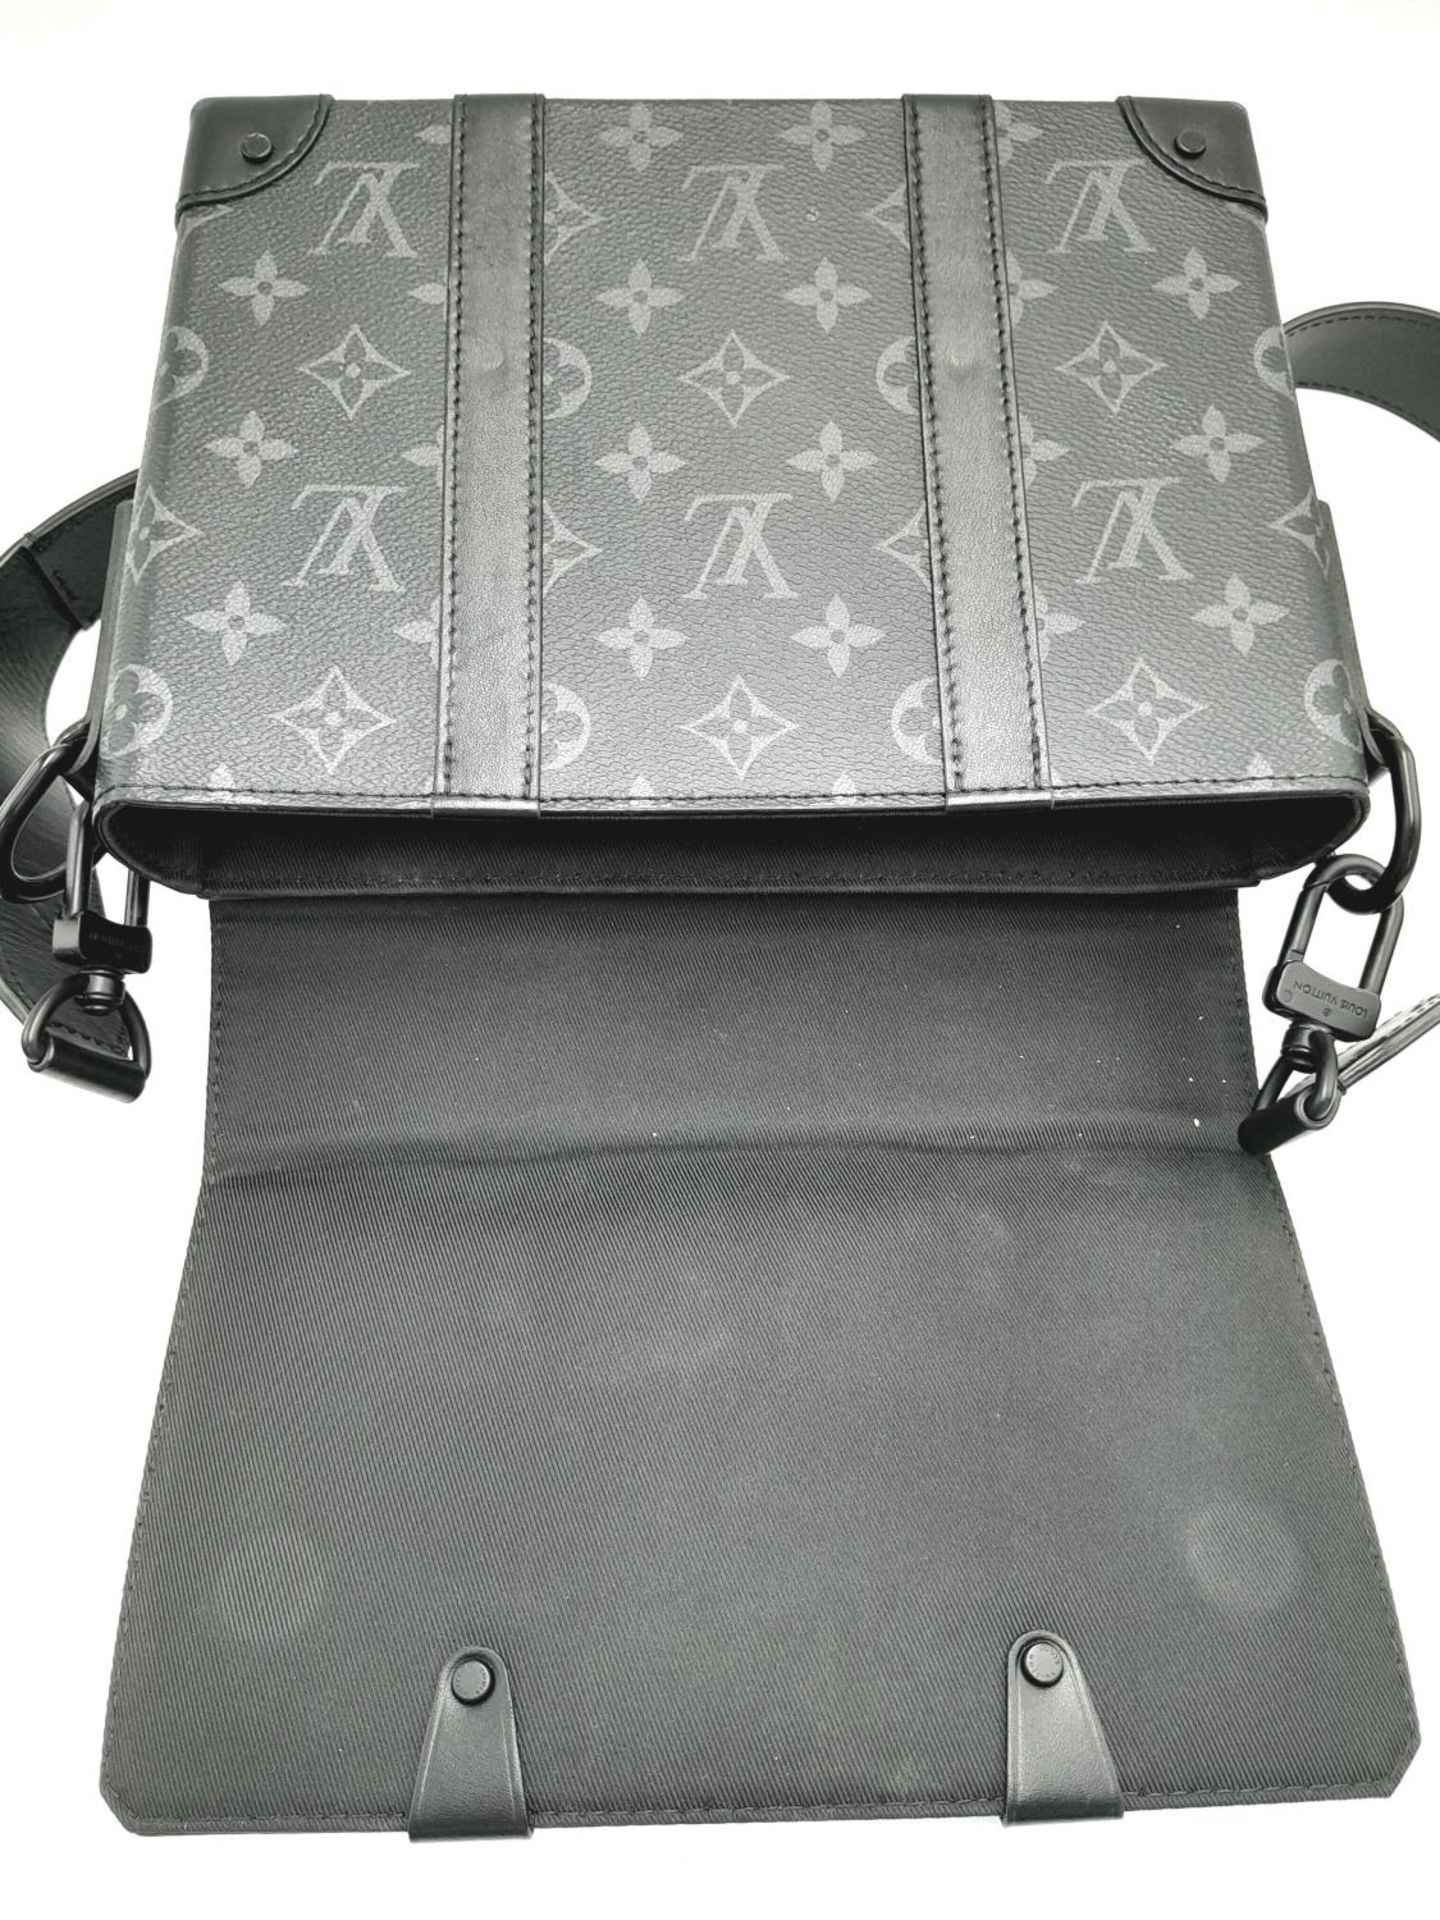 A Louis Vuitton Black Eclipse Trunk Messenger Bag. Monogramed canvas exterior with black-toned - Bild 2 aus 10